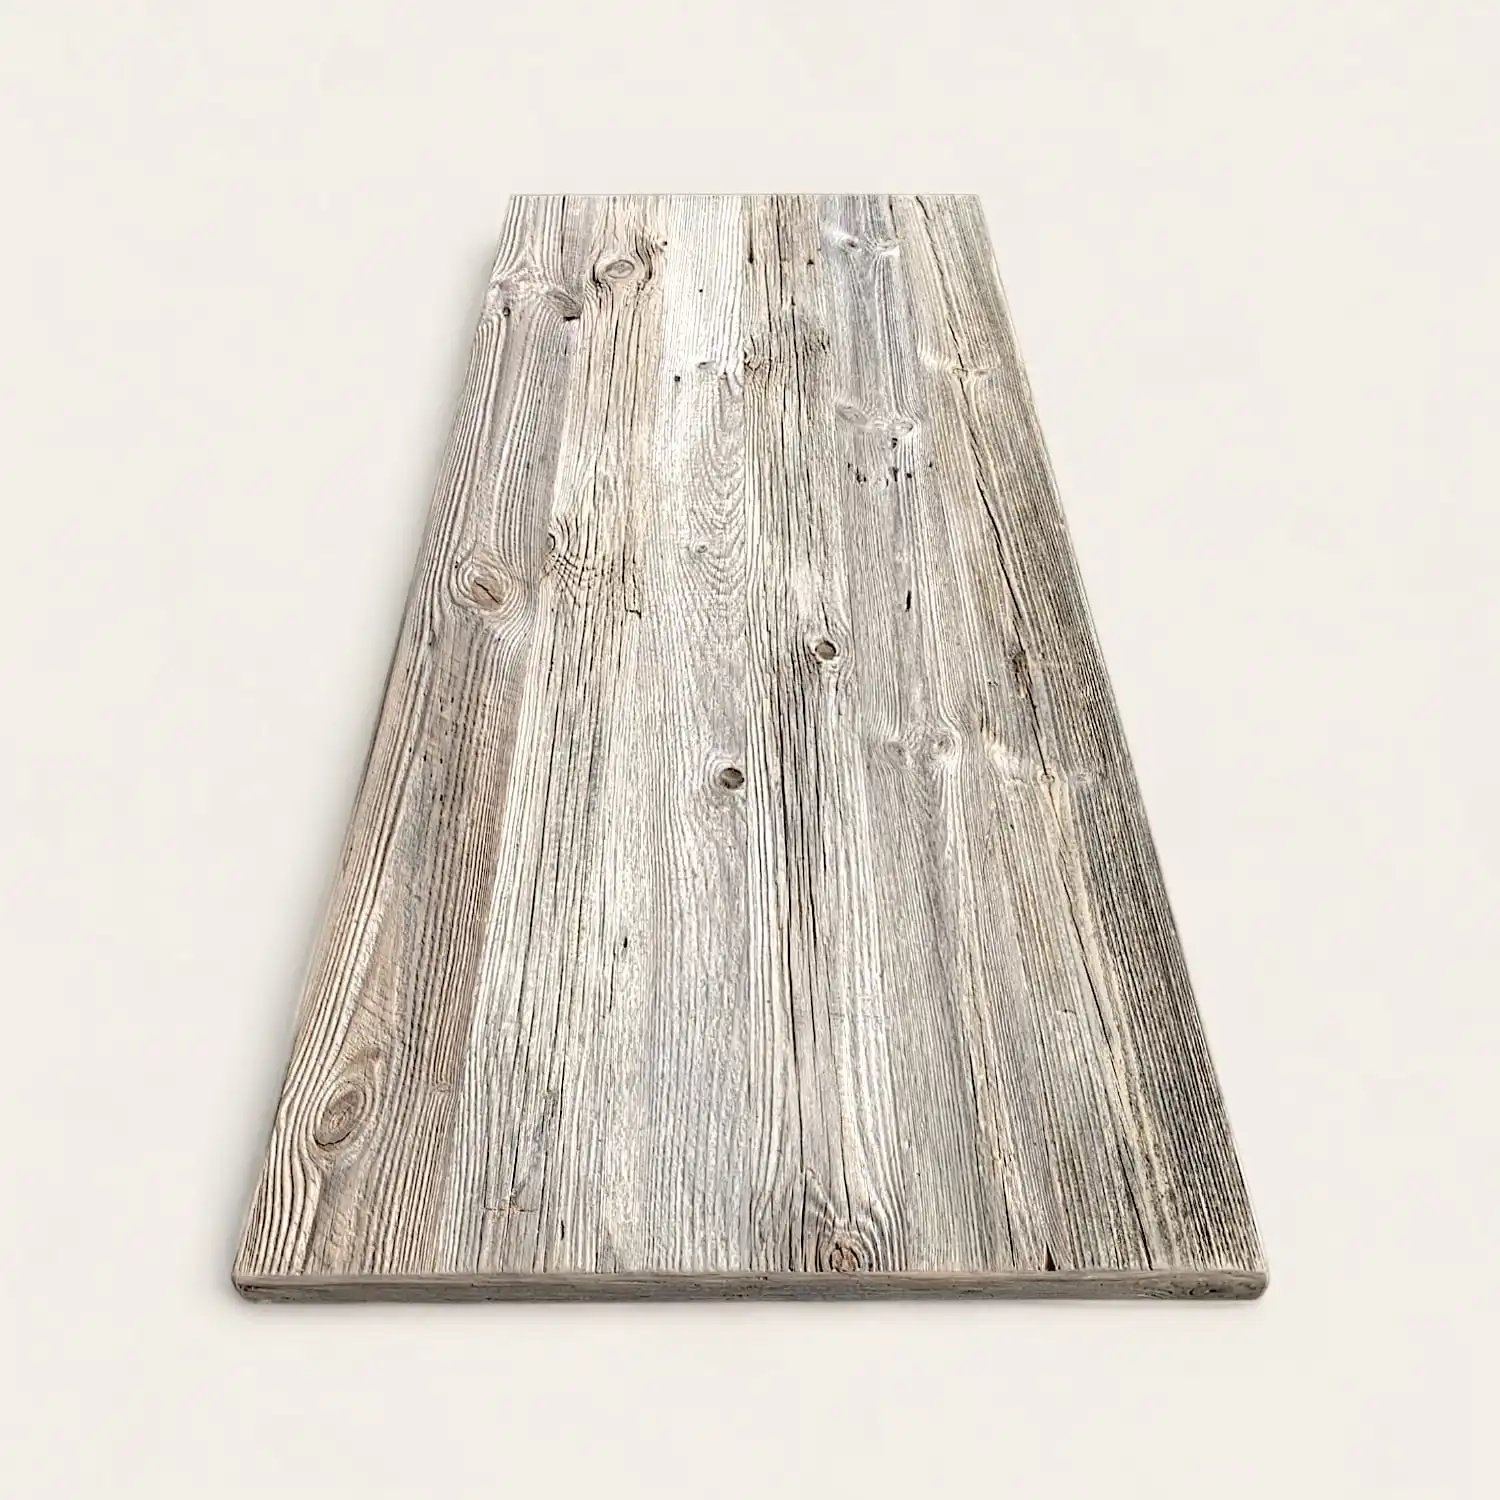  Une planche de bois rustique sur une surface blanche. 